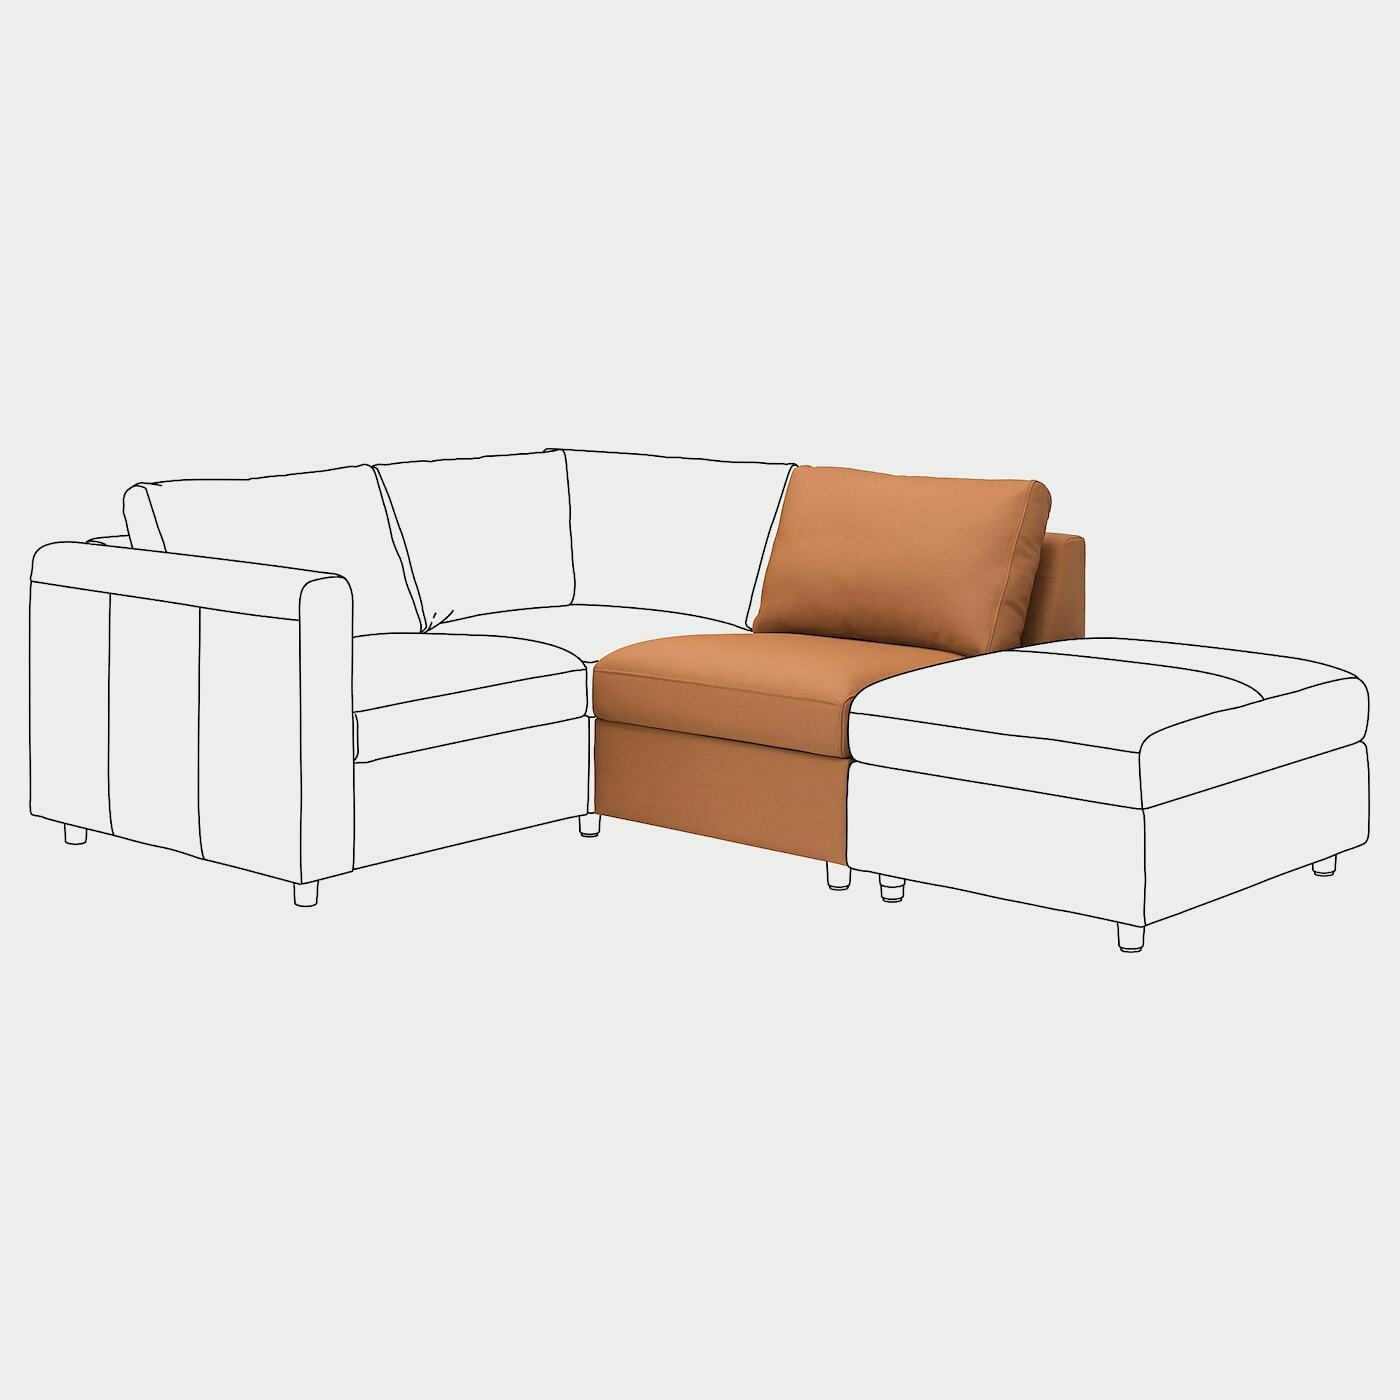 VIMLE Sitzelement 1  -  - Möbel Ideen für dein Zuhause von Home Trends. Möbel Trends von Social Media Influencer für dein Skandi Zuhause.